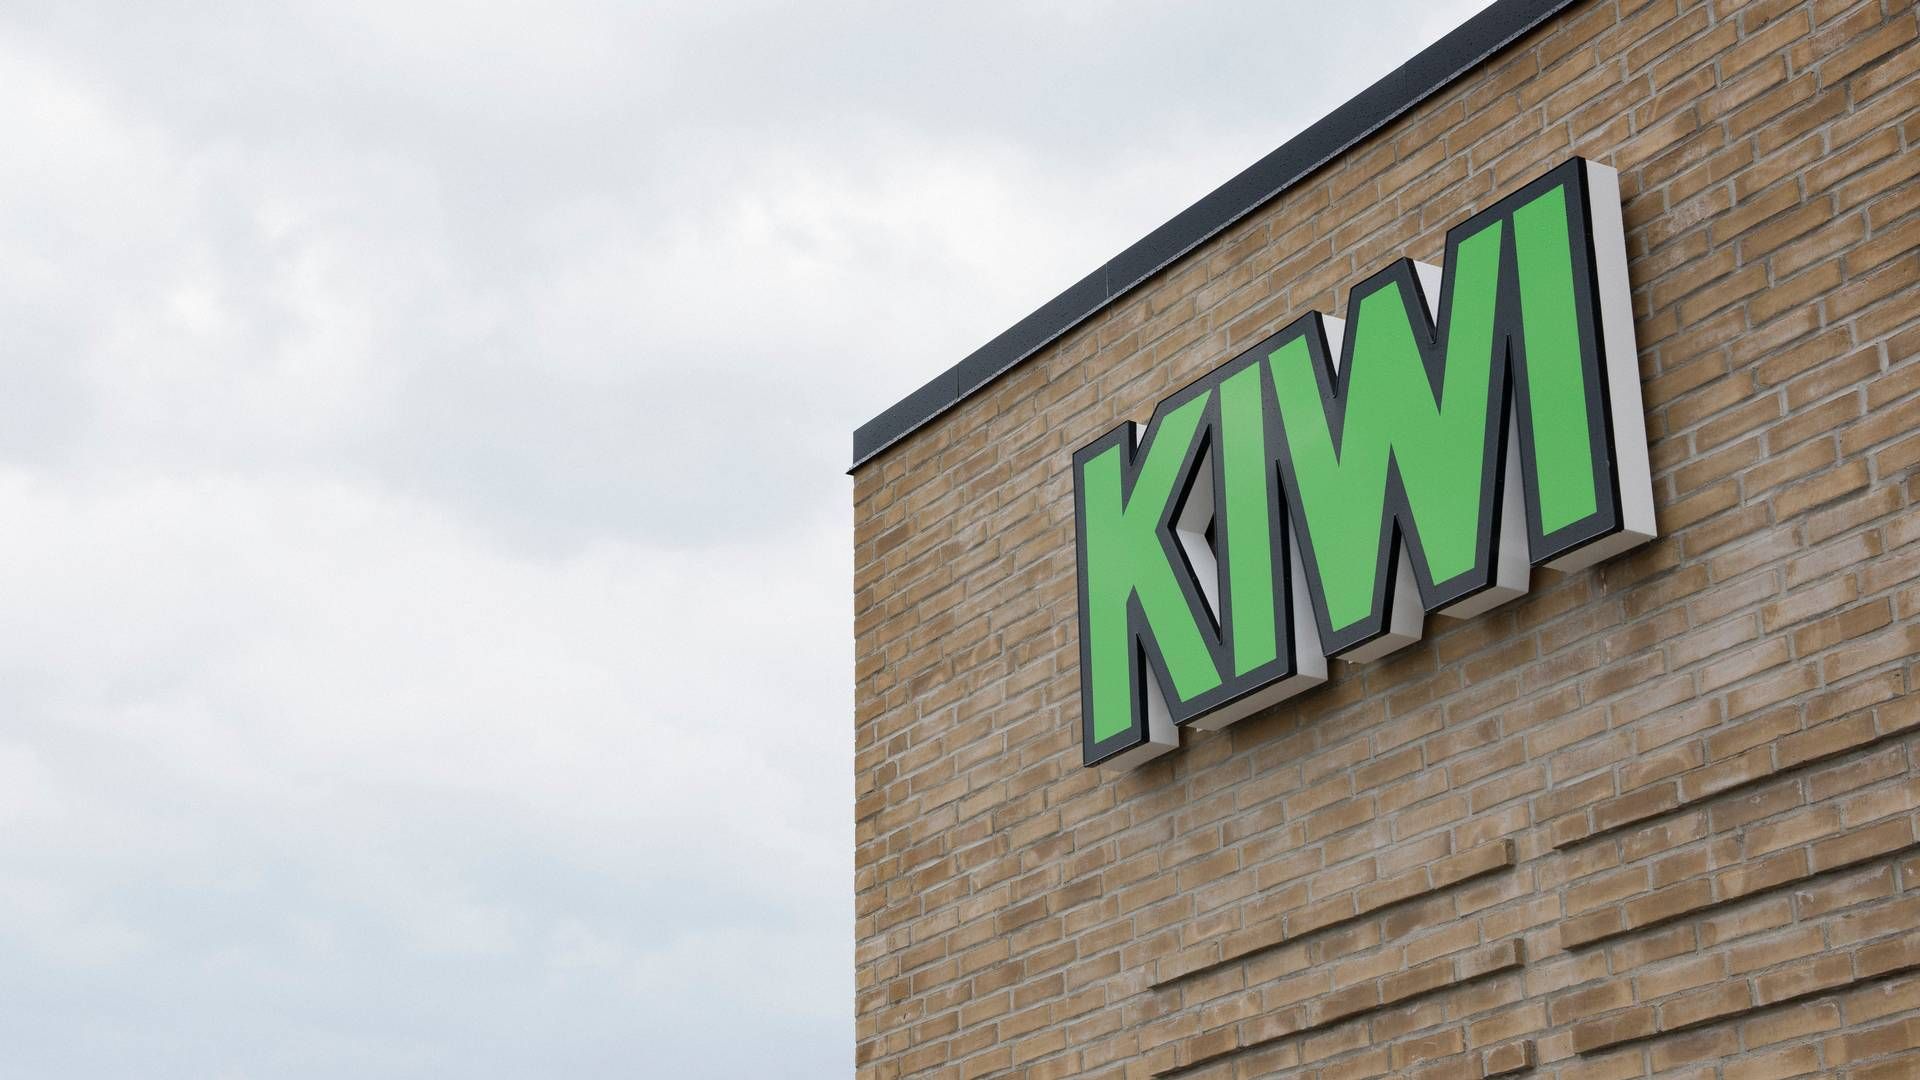 Kiwi-kæden, der blev stiftet i 1979, har knap 700 butikker i Norge. | Foto: Joachim Ladefoged